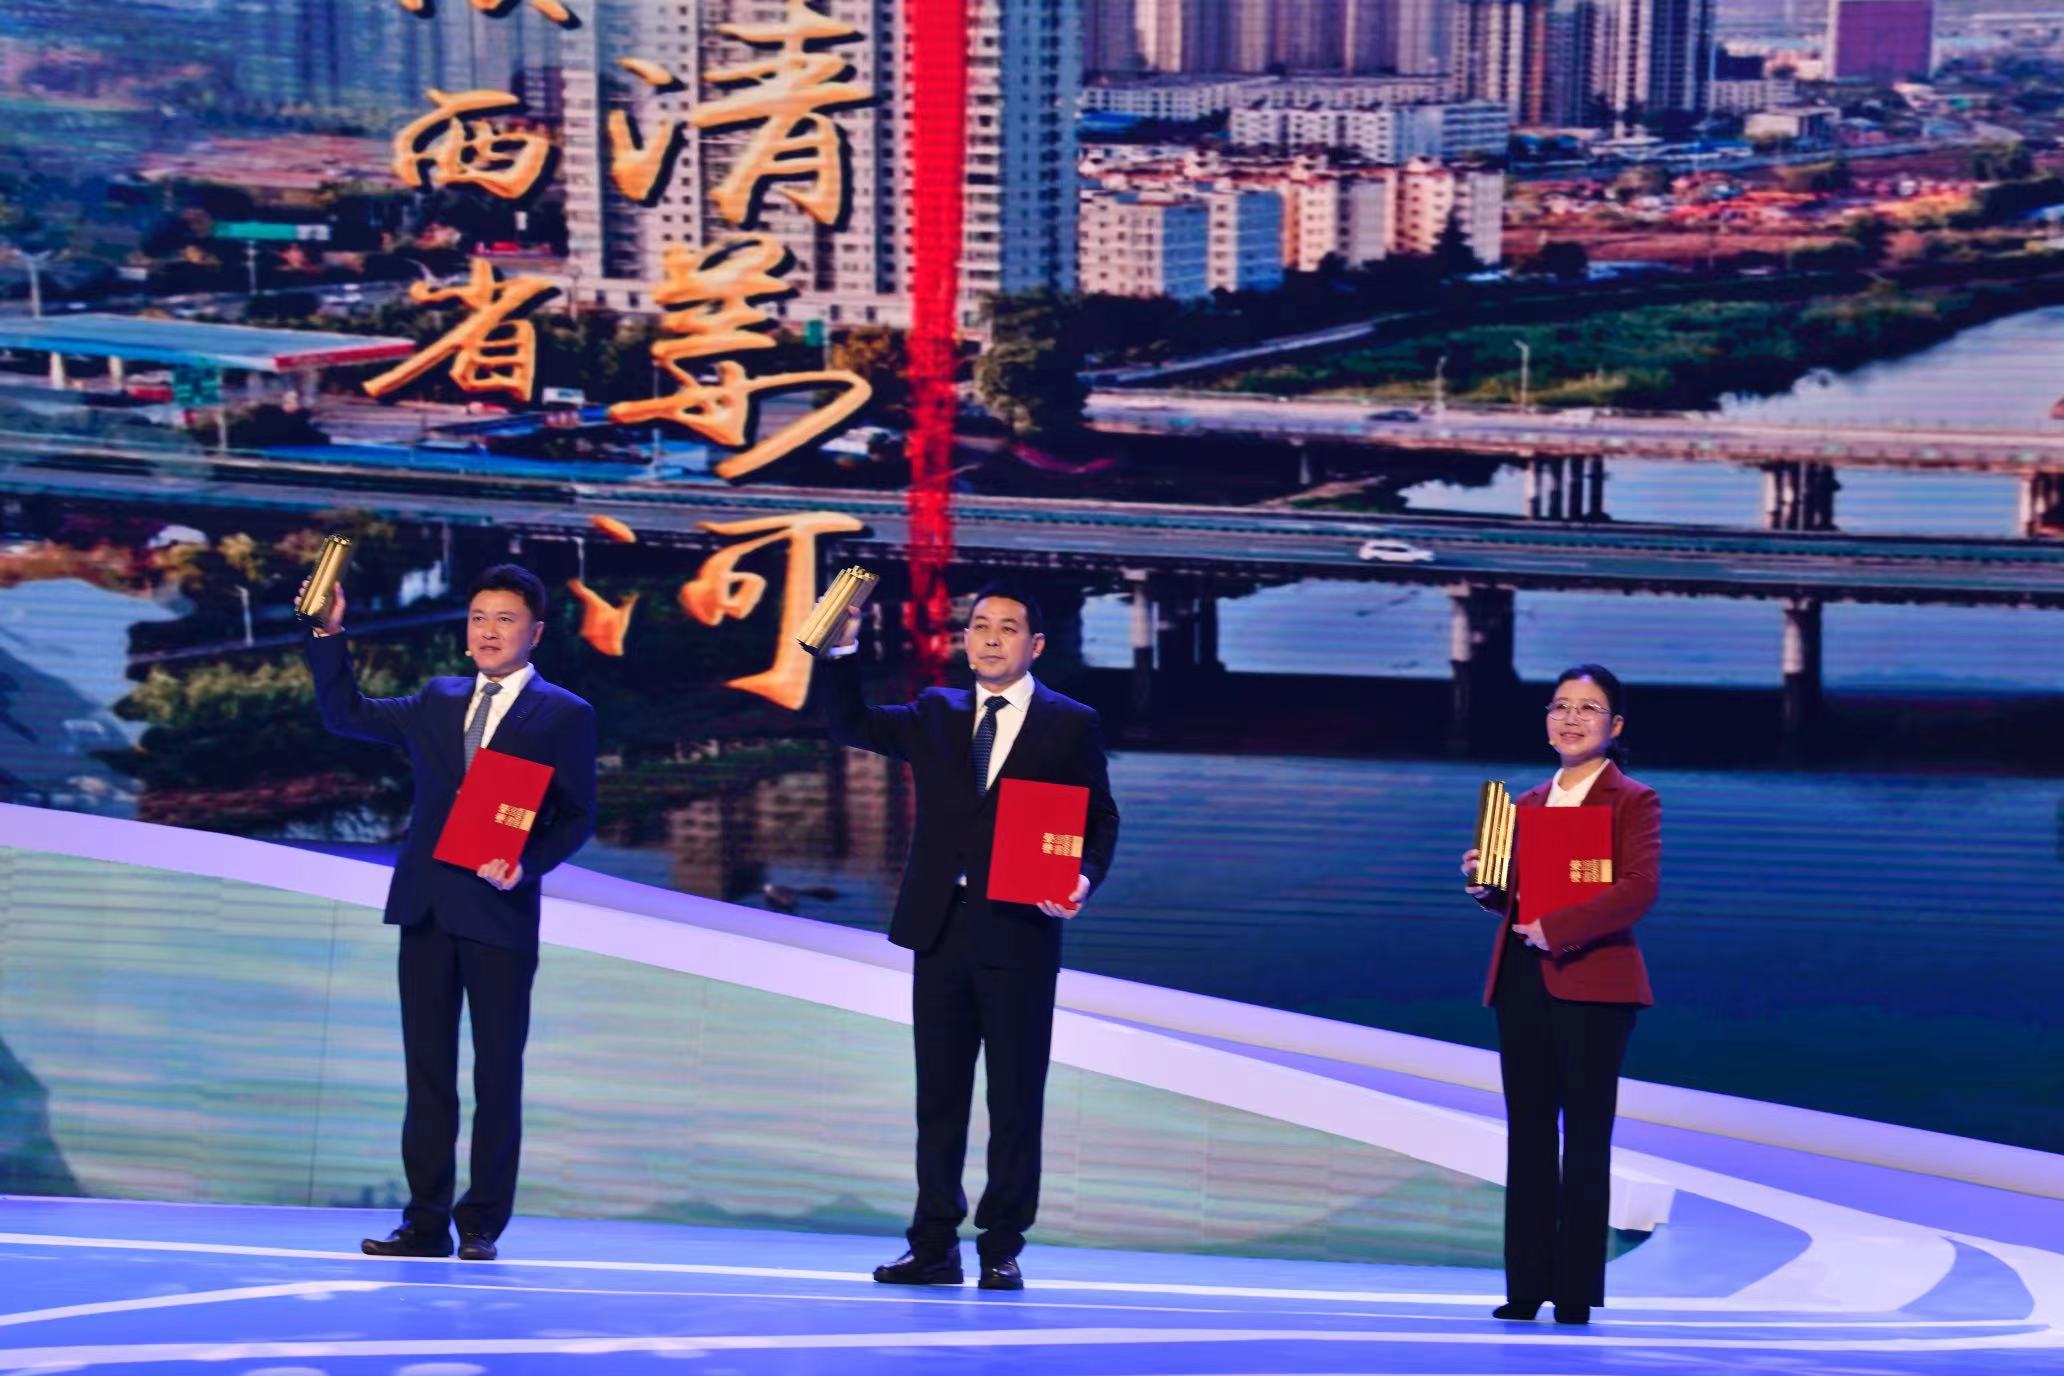 宝鸡市渭滨区捧回全国“最美家乡河”奖杯 此项殊荣陕西省唯一